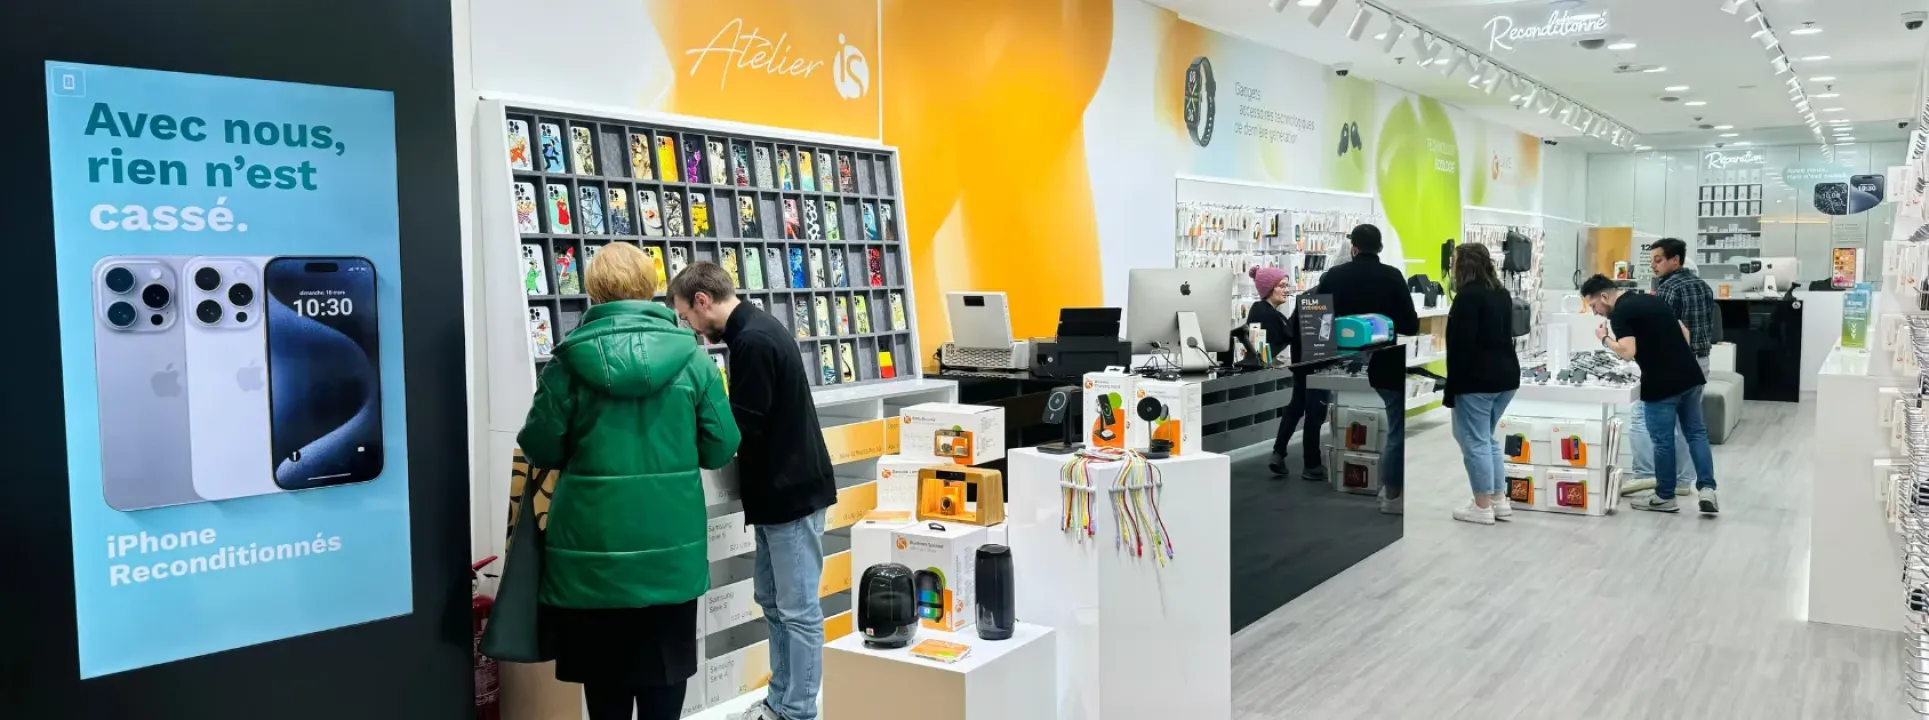 iServices ouvre son cinquième magasin en Belgique avec Atelier iS  blog post